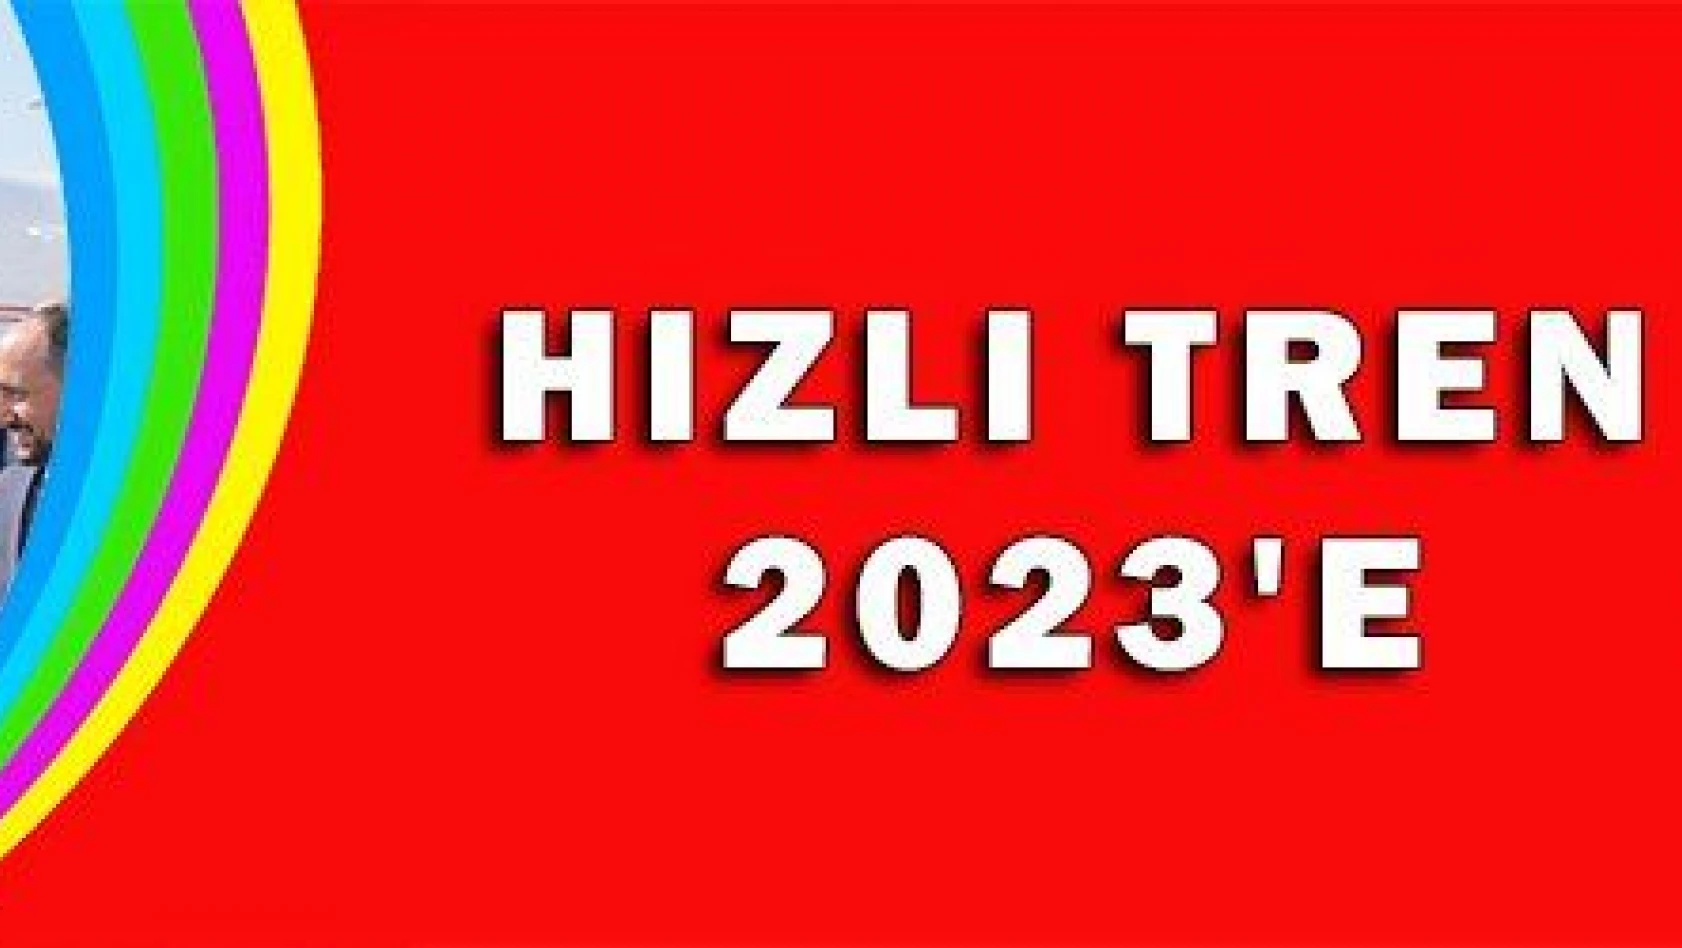 HIZLI TREN 2023'E 